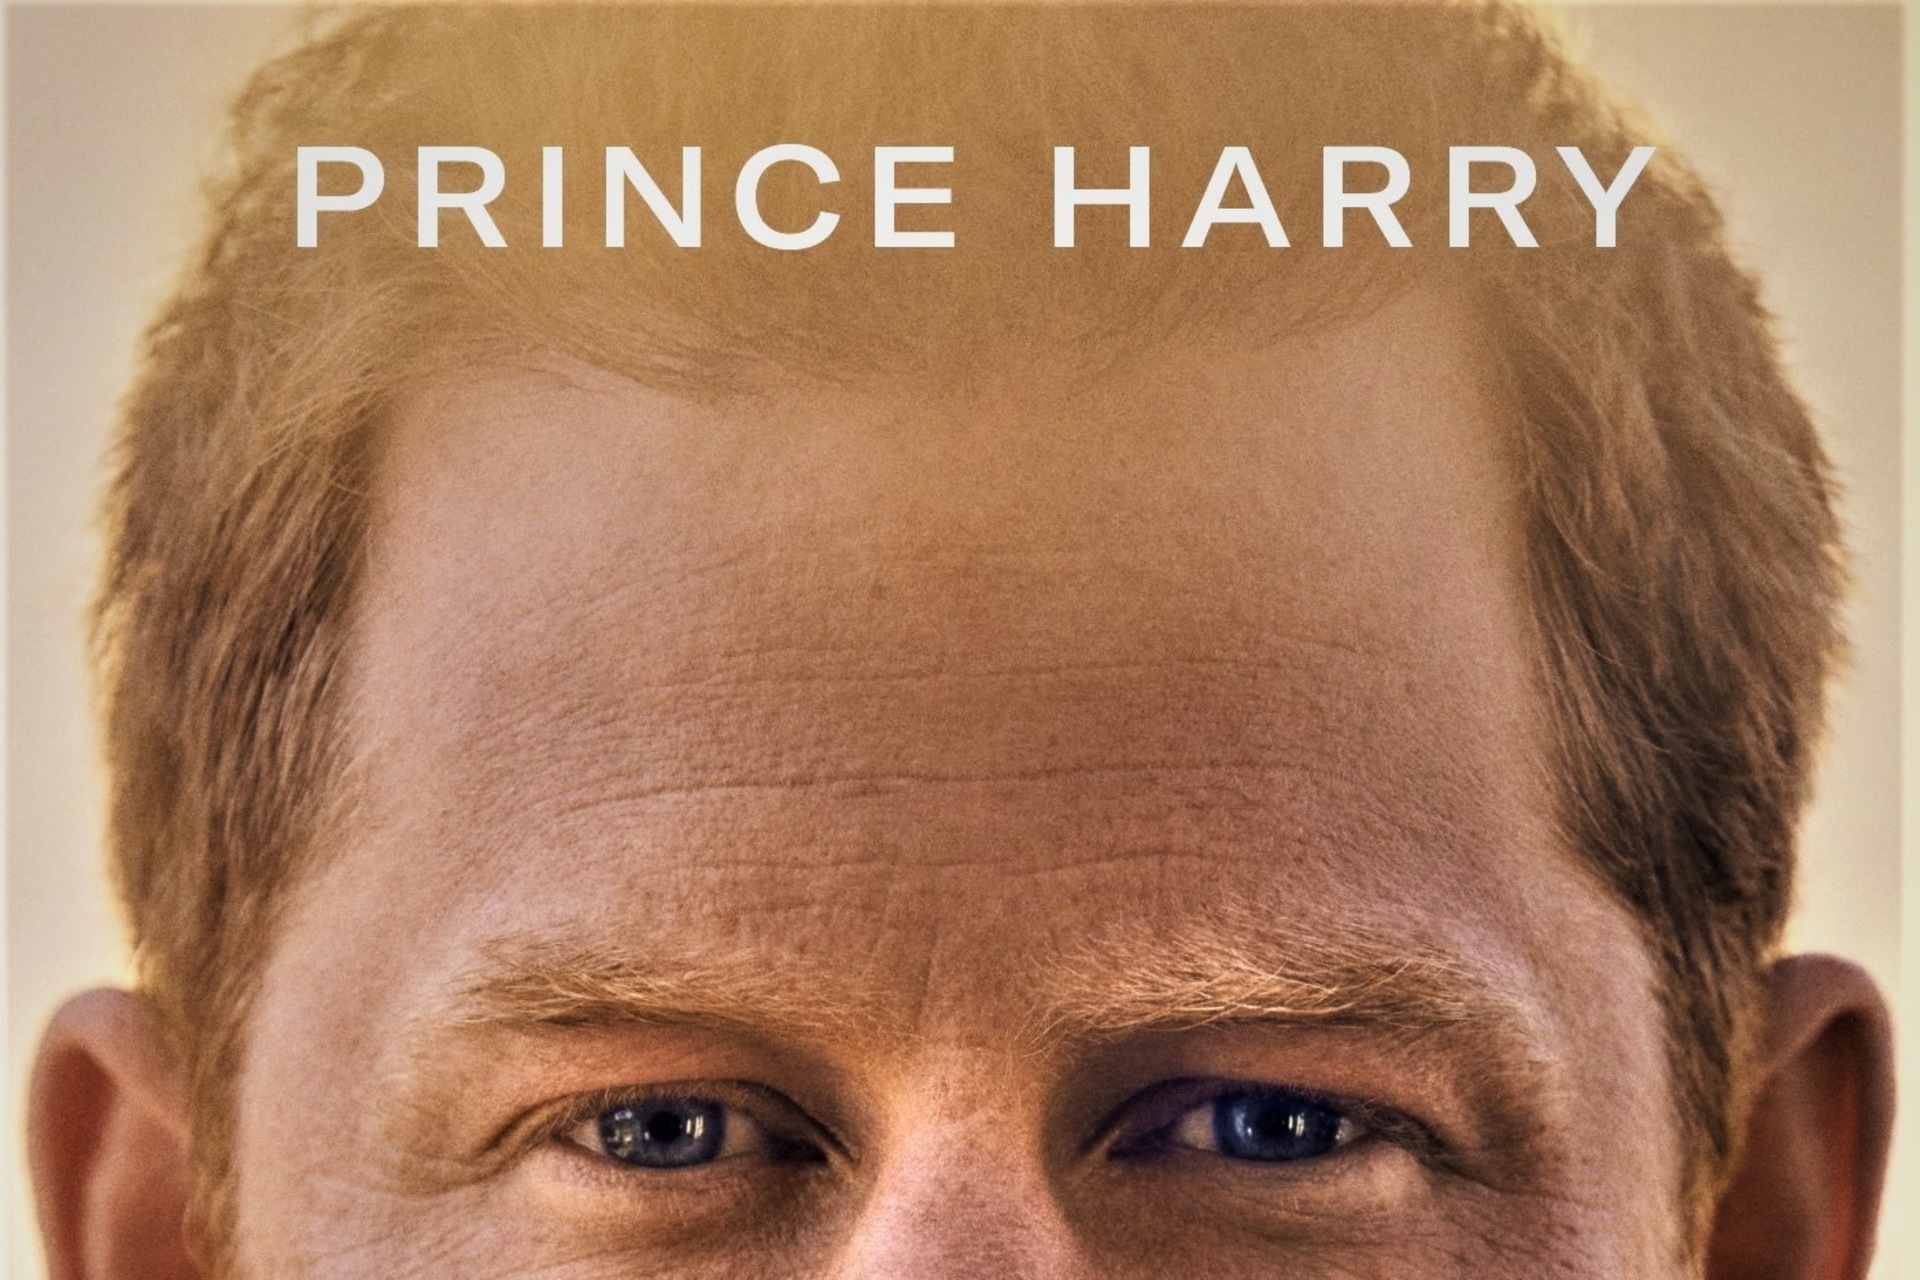 備用：蘇塞克斯公爵哈里王子的自傳體書籍封面上半部分，由蒙達多利出版，意大利文版，標題為“備用，小調”